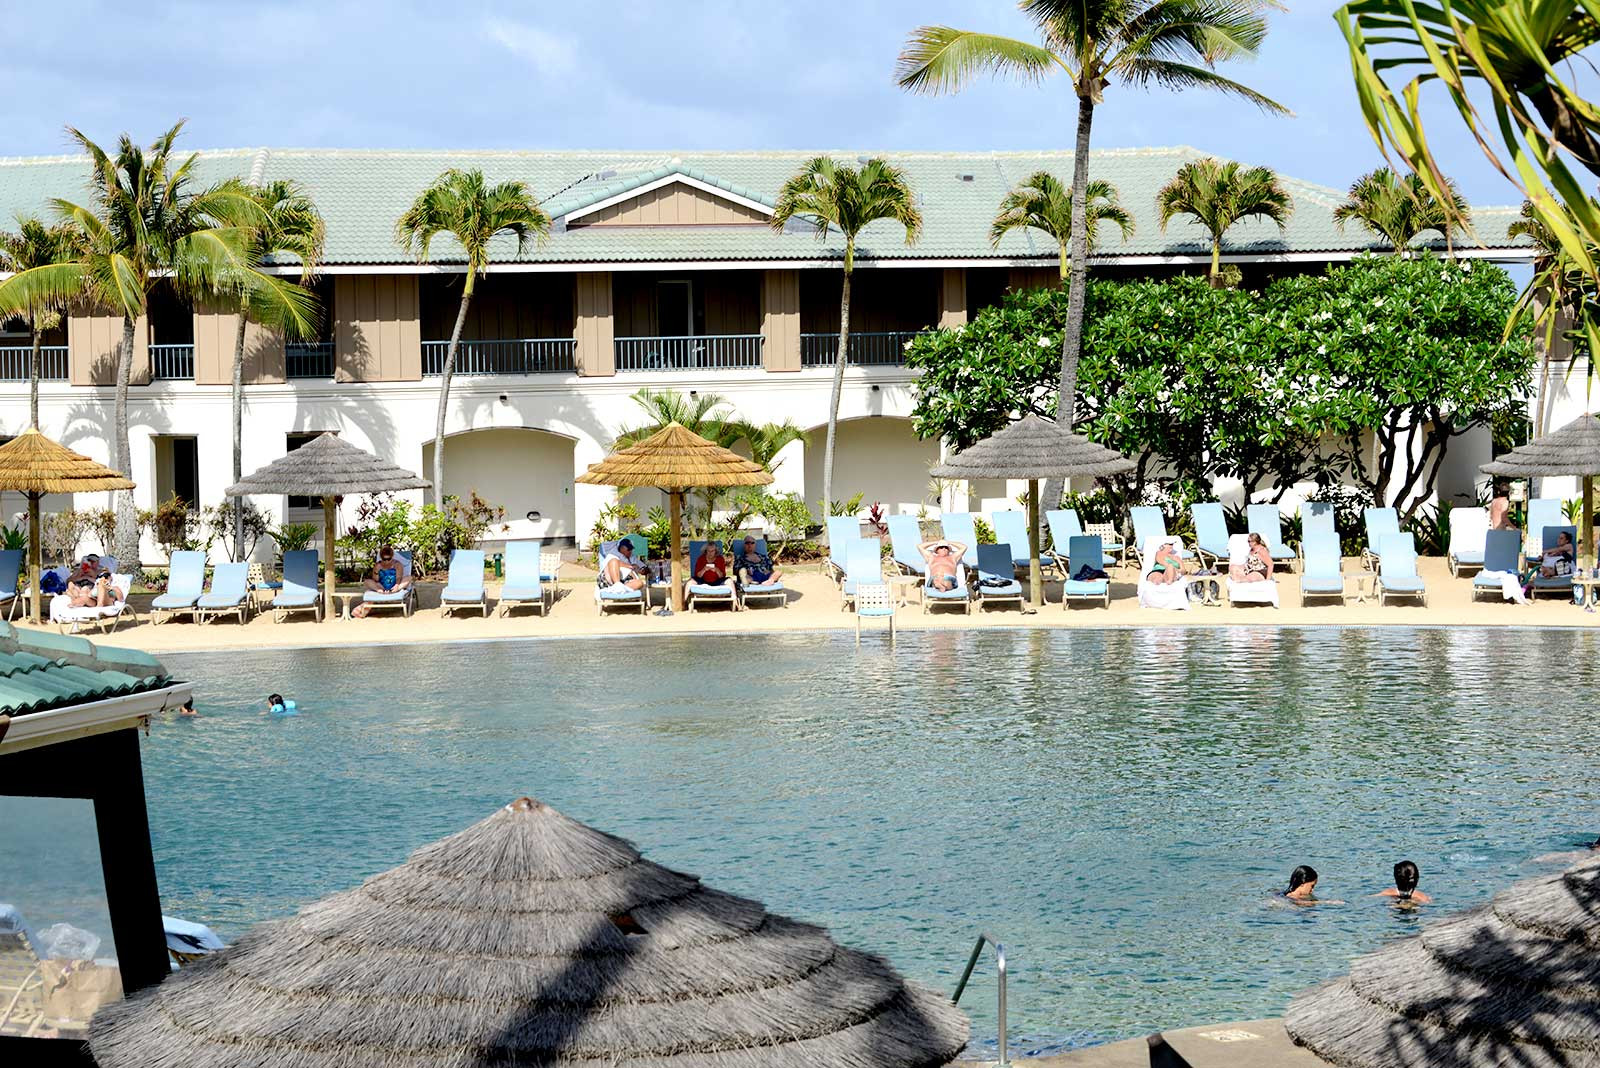 Diamond Resorts - The Point at Poipu, Kauai timeshare resales